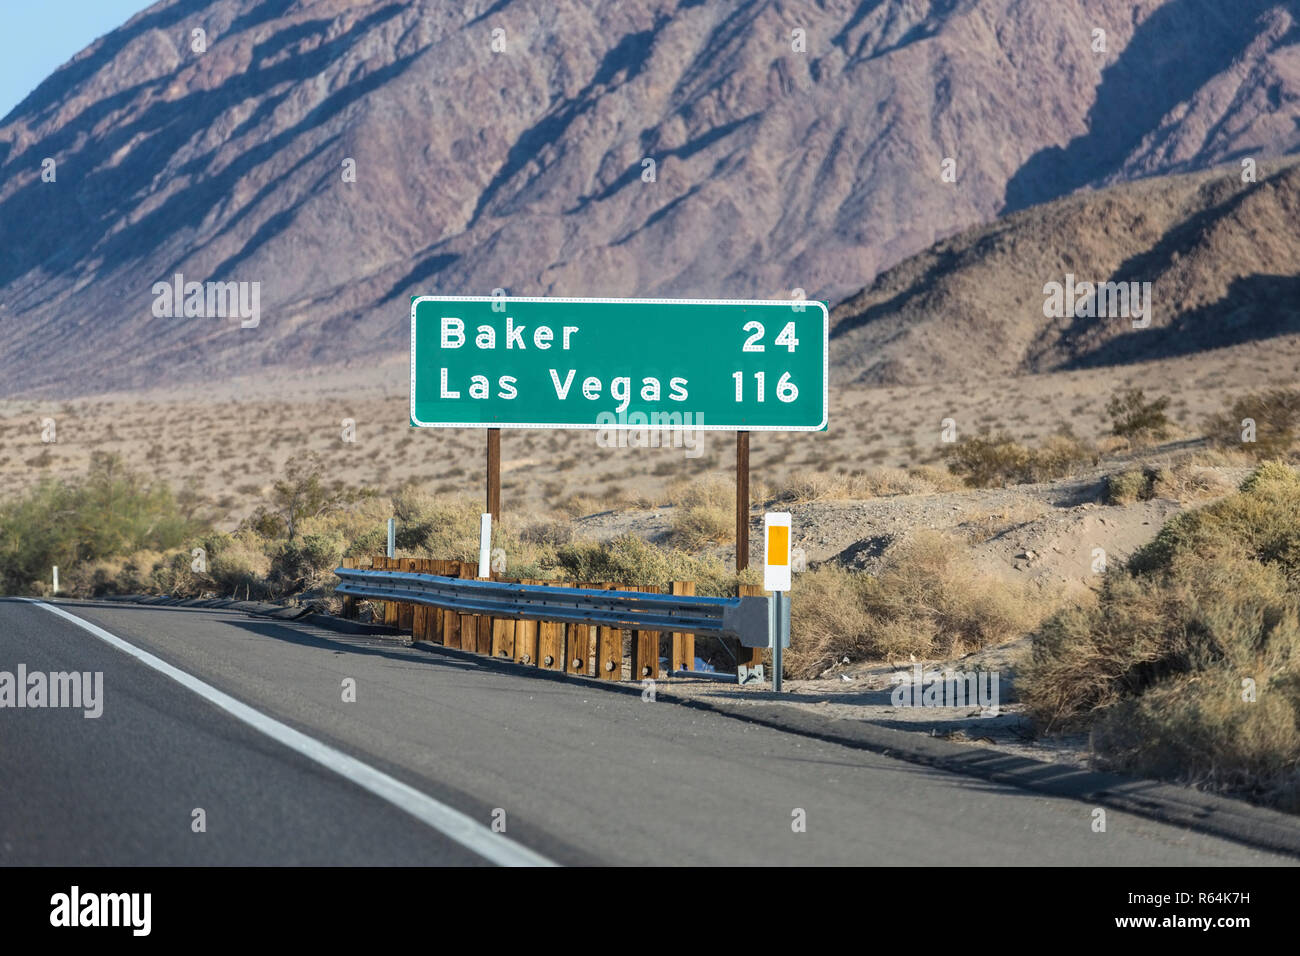 Las Vegas 116 chilometri di autostrada sulla Interstate 15 vicino a Baker nel deserto di Mojave zona del sud della California. Foto Stock